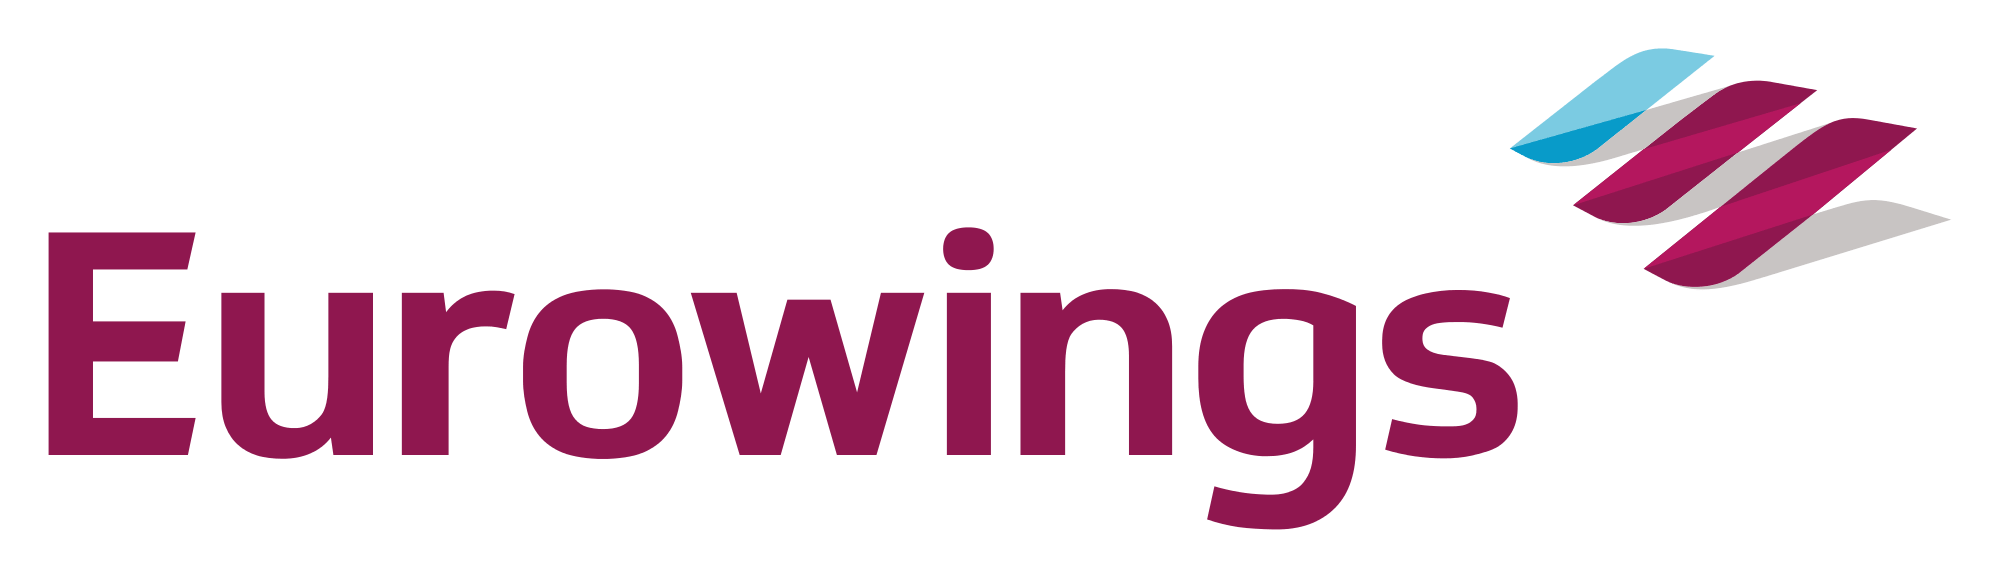 Euro Wings logo